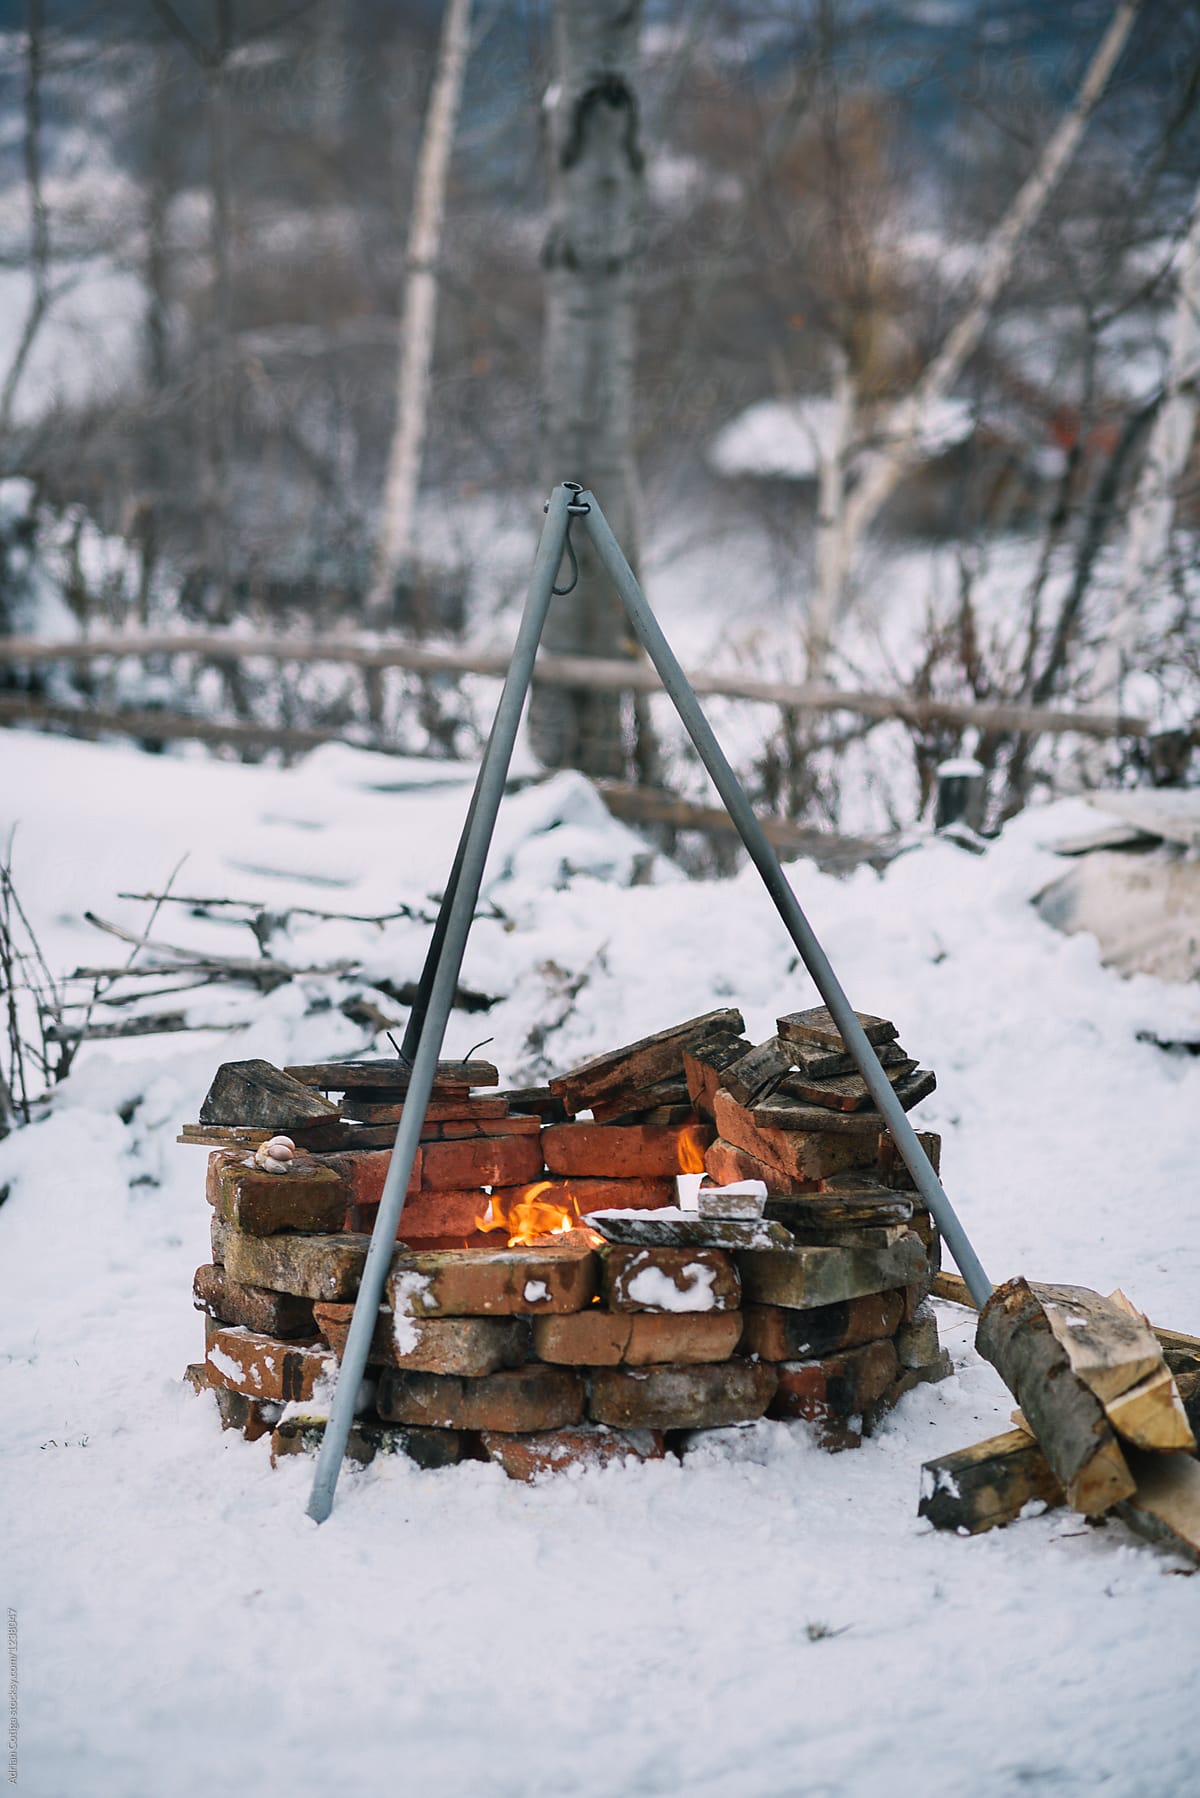 Making fire outside in winter